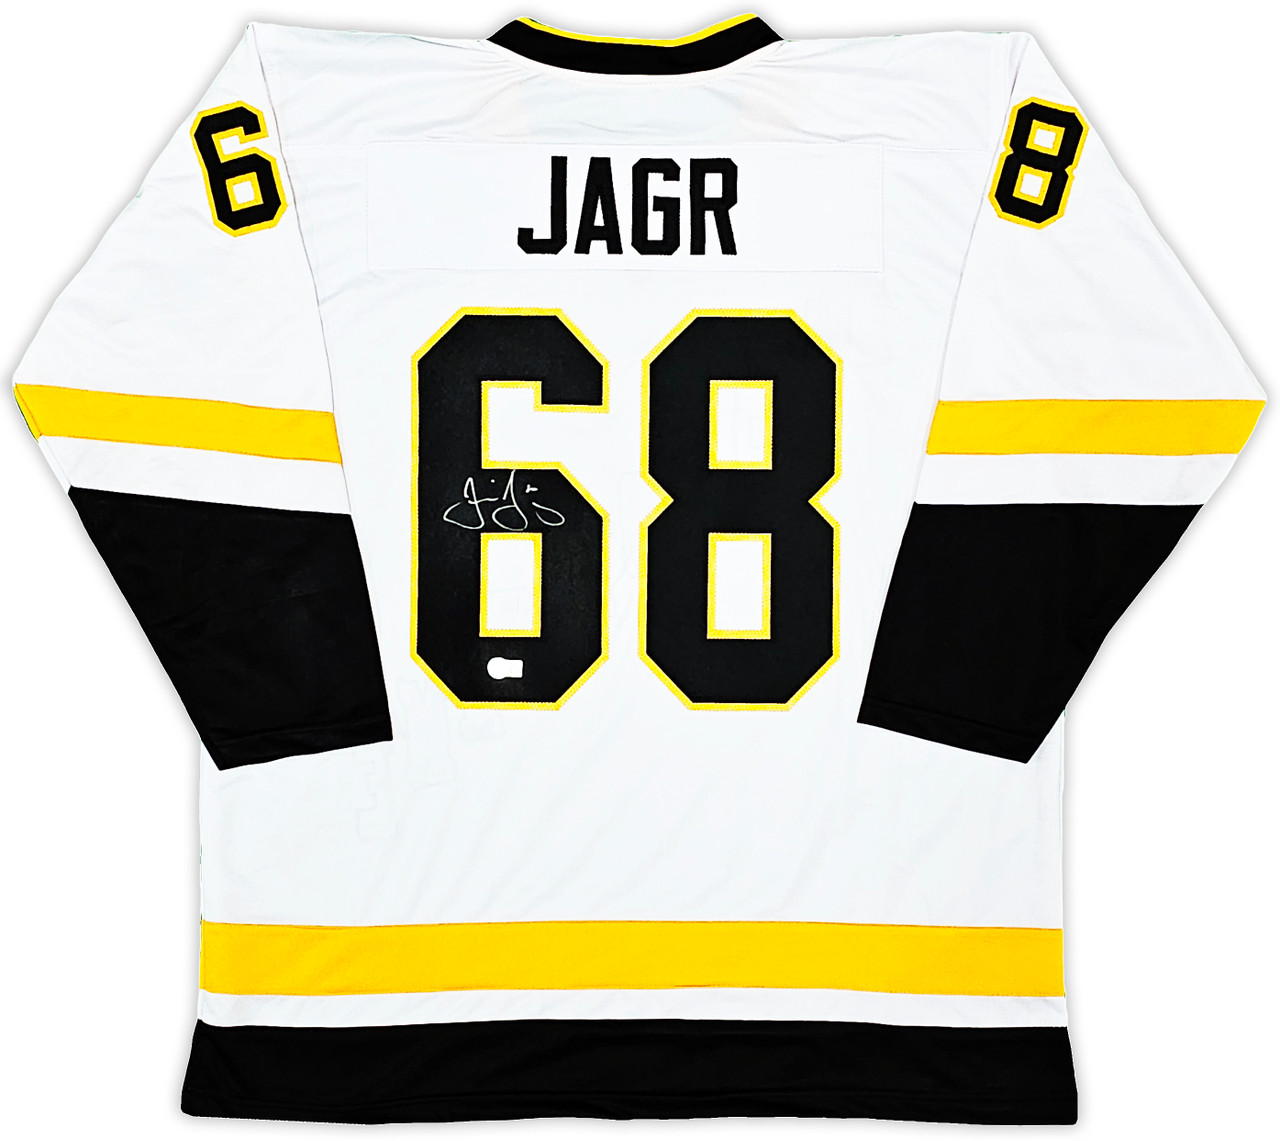 Jaromir Jagr Signed Penguins Jersey (Beckett COA)